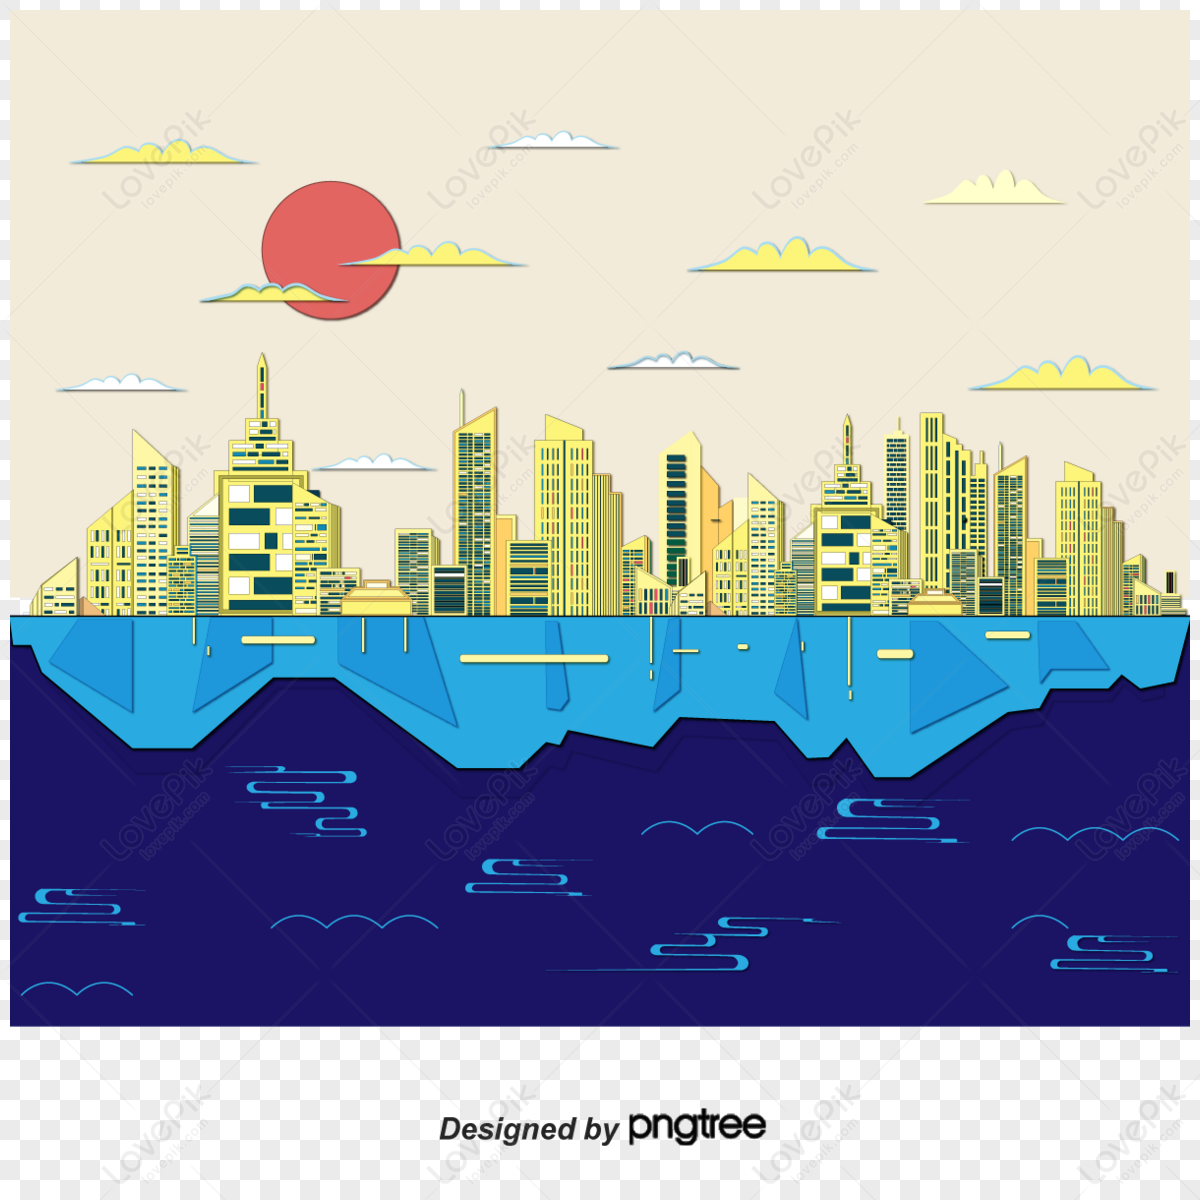 Mumbai skyline drawn sketch Royalty Free Vector Image